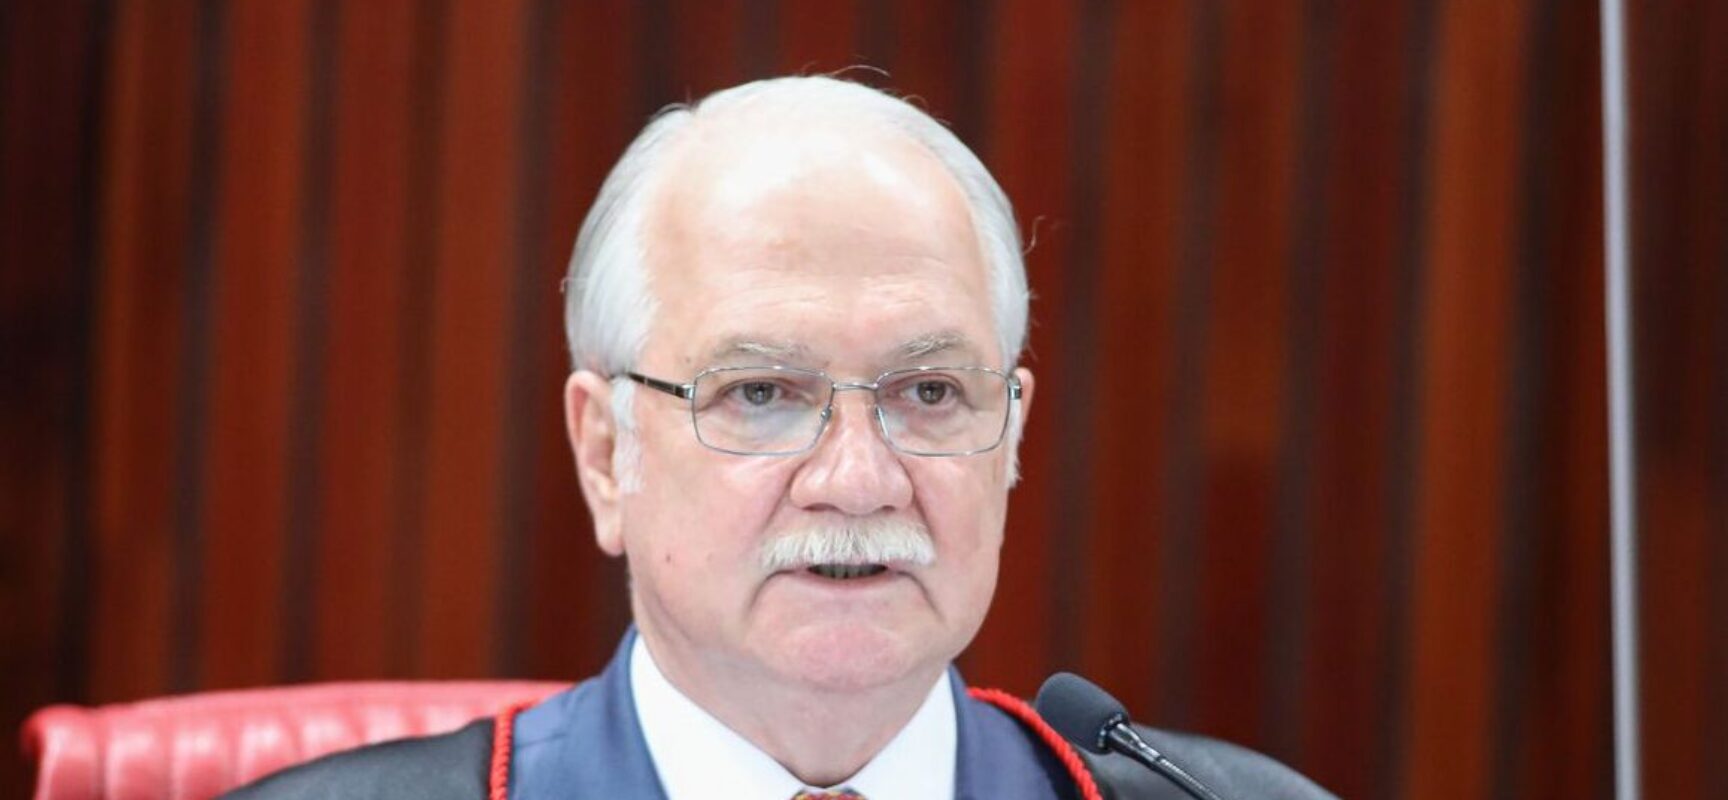 Brasil deve mostrar que rejeita “aventuras autoritárias”, diz ministro